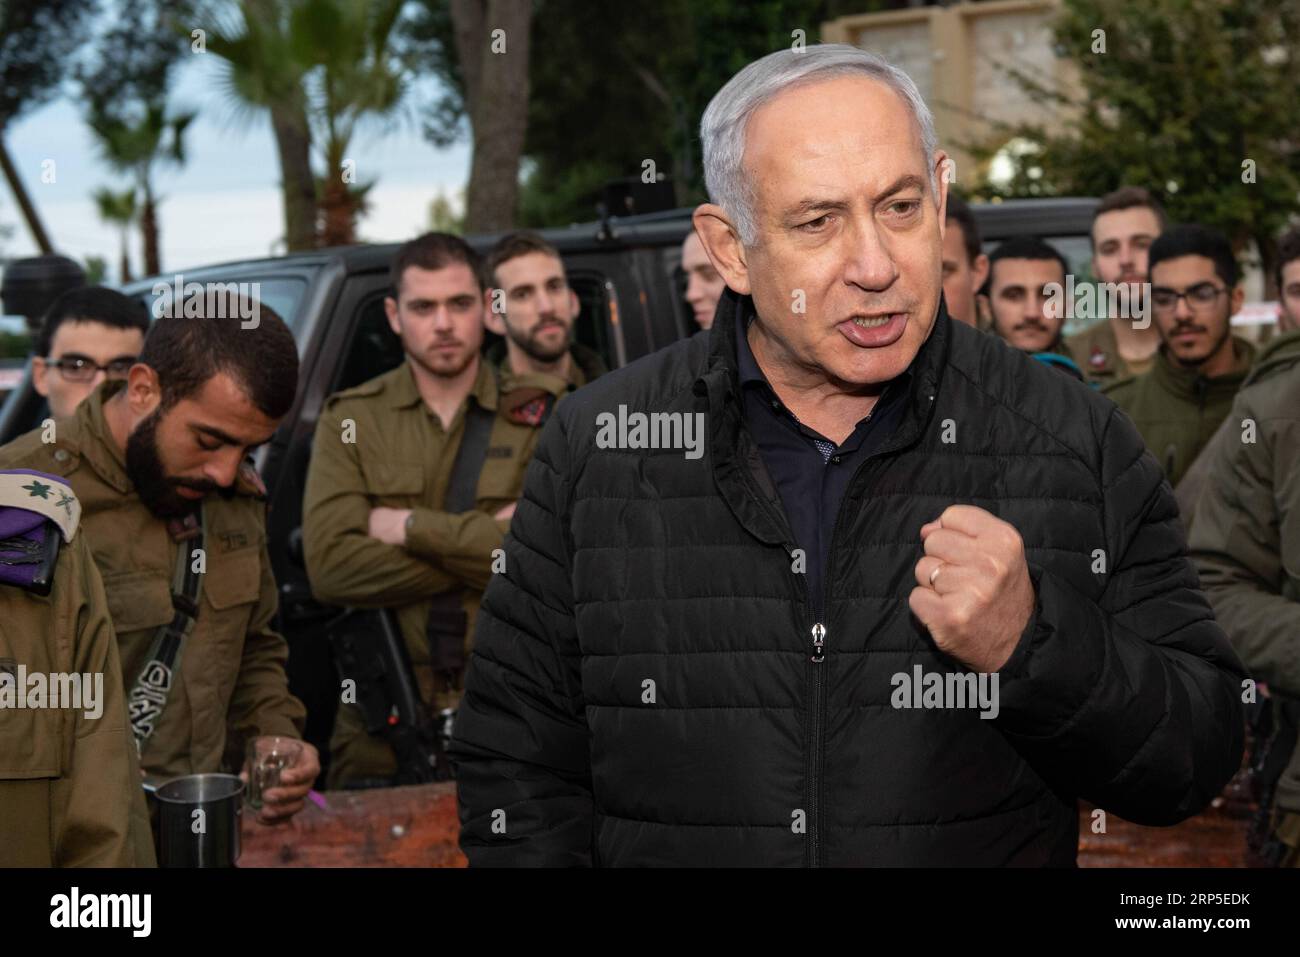 (181211) -- SAFED (ISRAELE), 11 dicembre 2018 -- il primo ministro israeliano Benjamin Netanyahu (fronte) parla durante una visita alla base di comando settentrionale nella città israeliana settentrionale di Safed, l'11 dicembre 2018. Martedì Benjamin Netanyahu ha avvertito che la milizia libanese di Hezbollah subirà colpi inimmaginabili se resisterà alla recente operazione israeliana di distruggere i tunnel transfrontalieri. JINI/) ISRAEL-SAFED-PM-NORTHERN BORDER-VISIT AYALXMARGOLIN PUBLICATIONXNOTXINXCHN Foto Stock